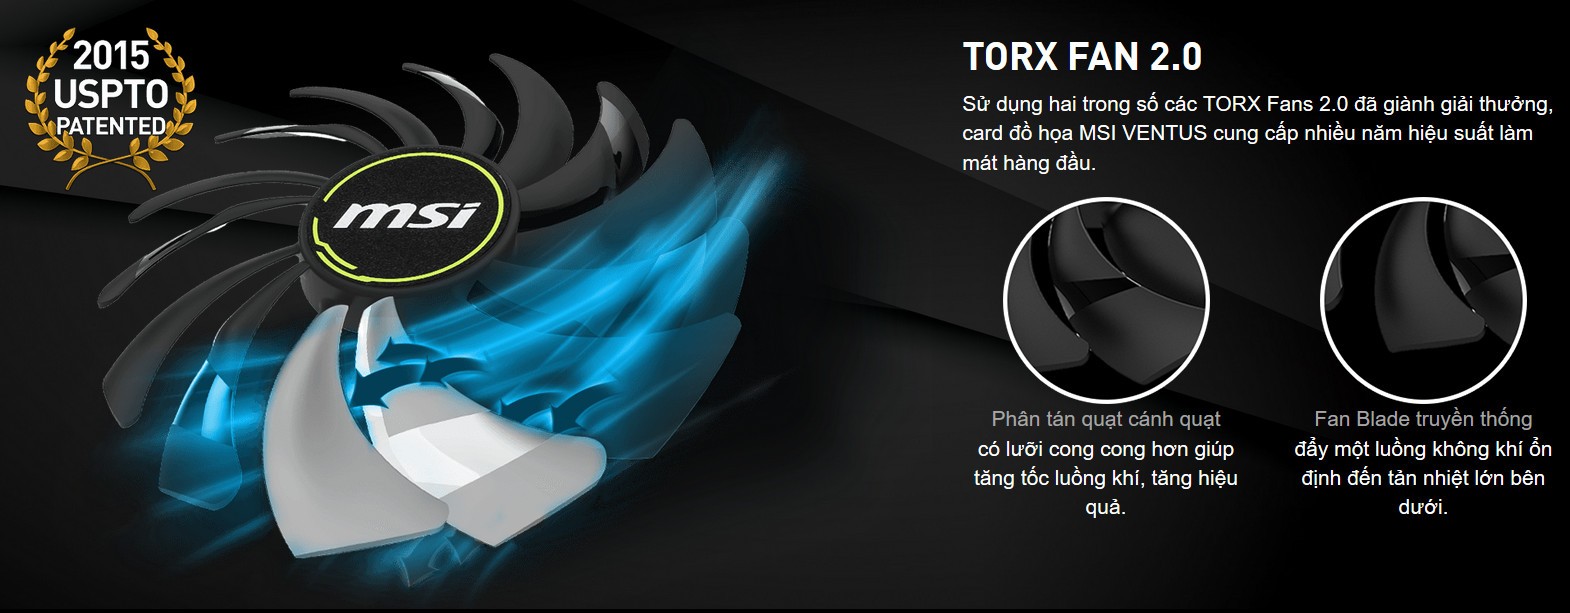 TORX FAN 2.0